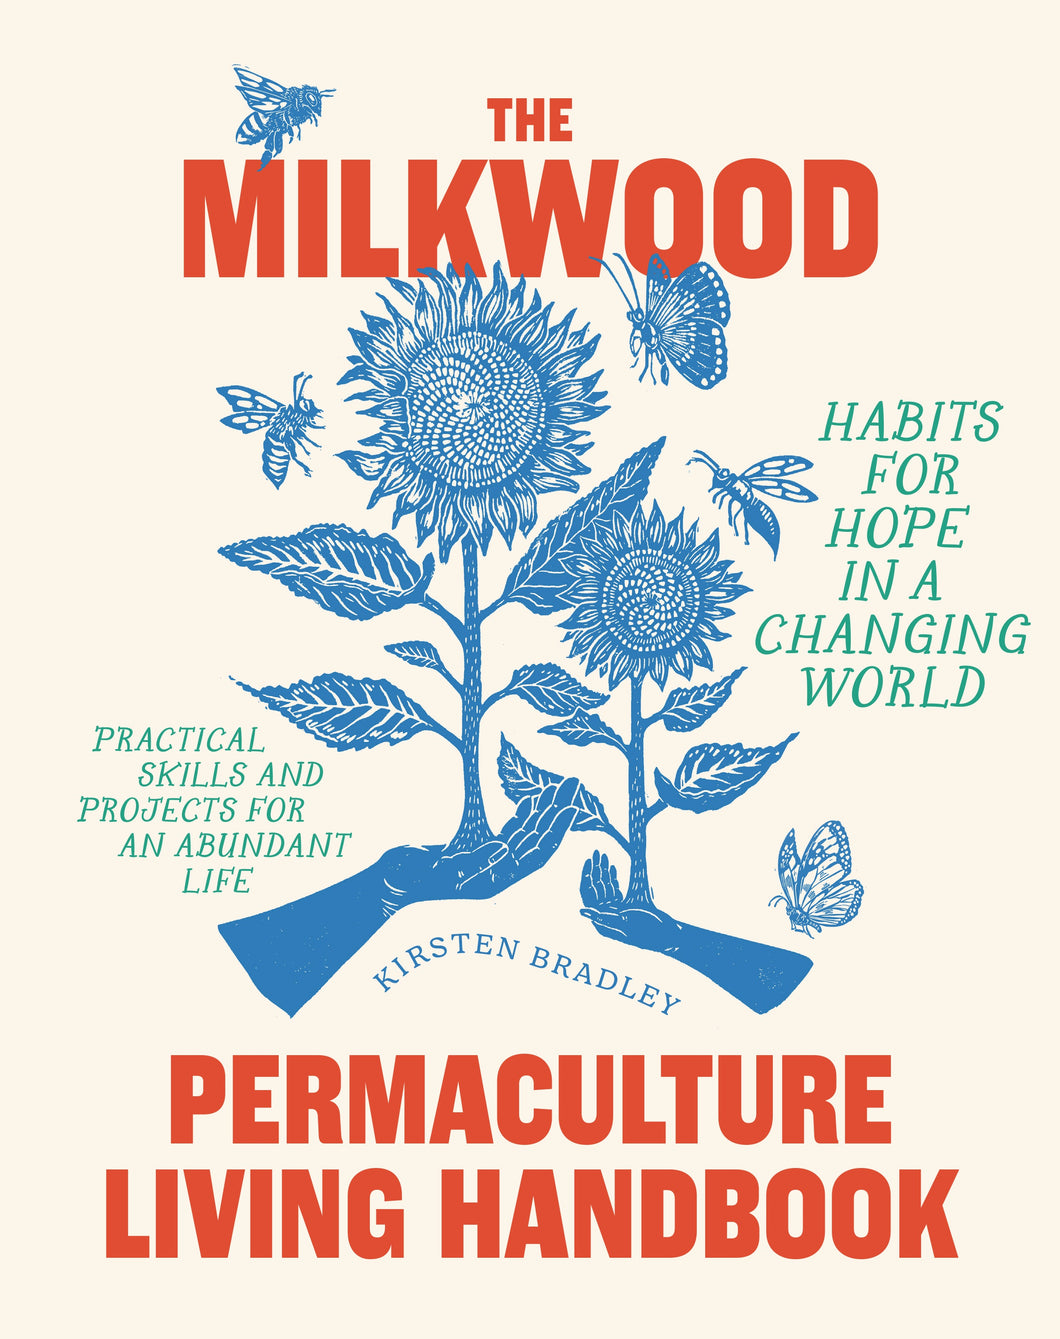 Milkwood Permaculture Living Handbook by Kirsten Bradley